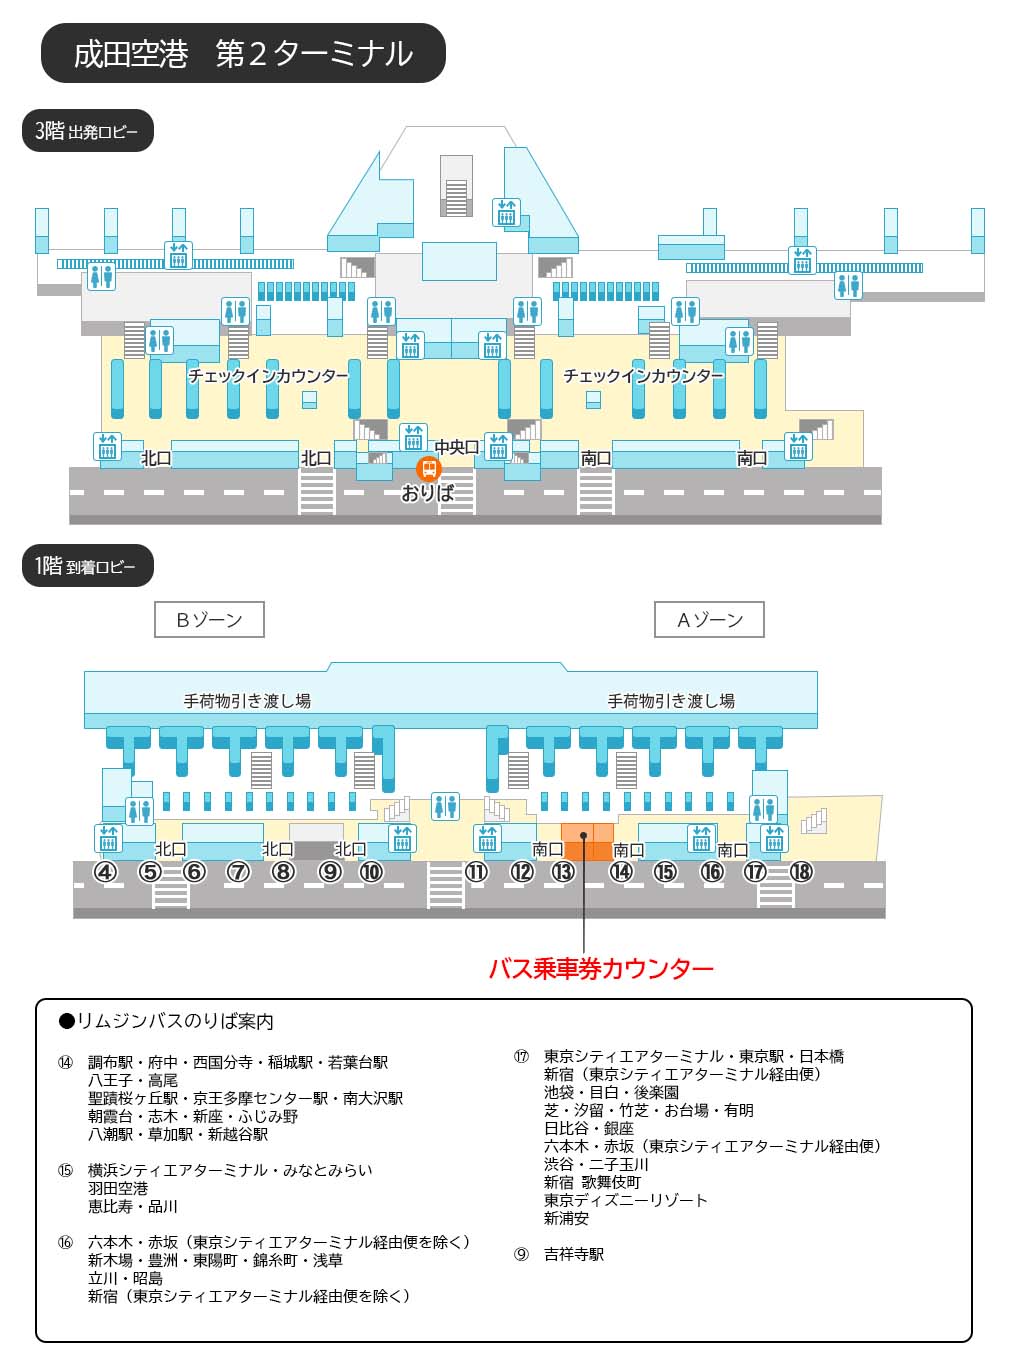 リムジンバス時刻表 リムジンバスの東京空港交通